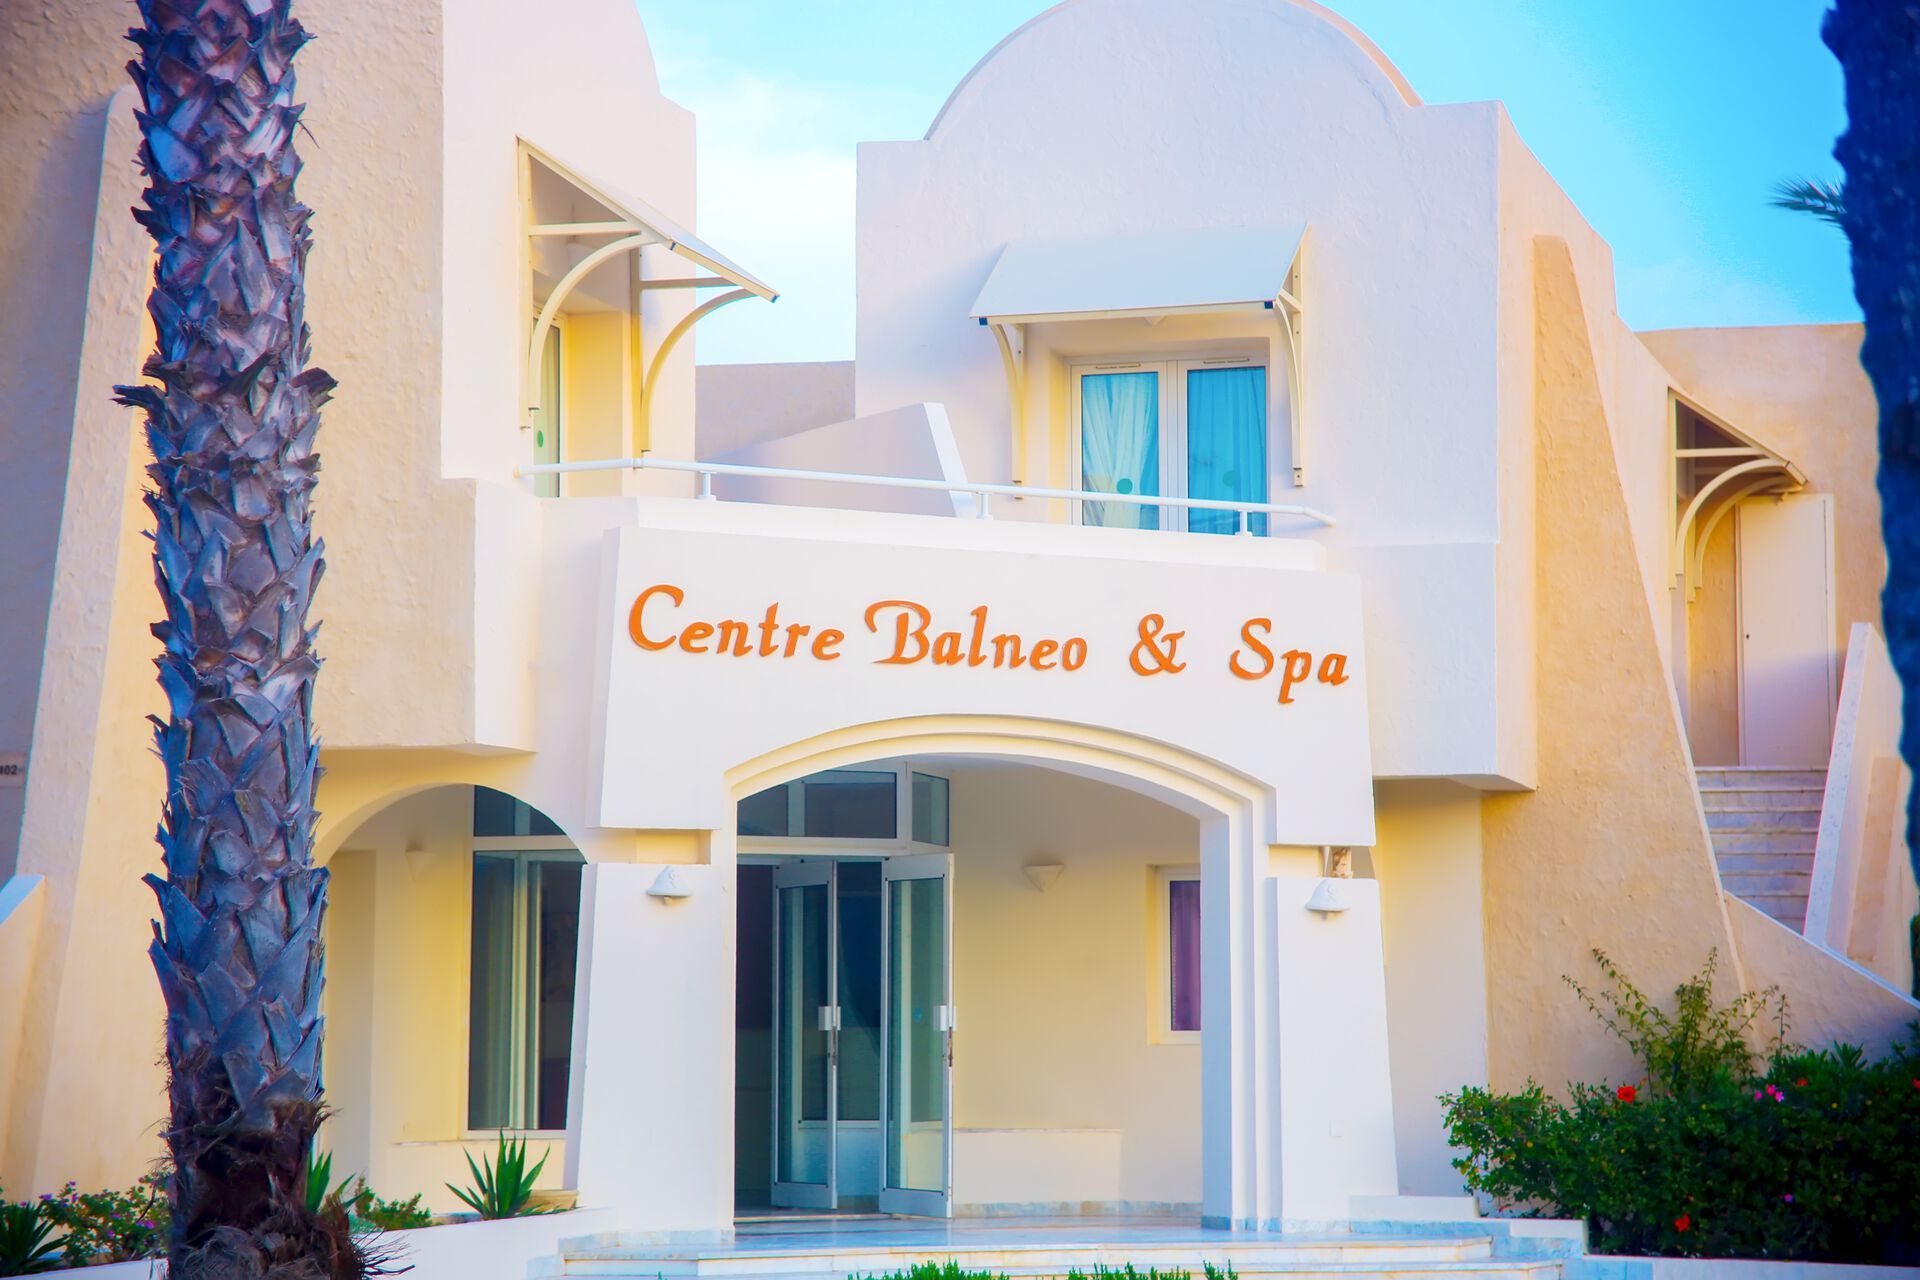 Tunisie - Djerba - Hotel Club Telemaque Beach & Spa 4*